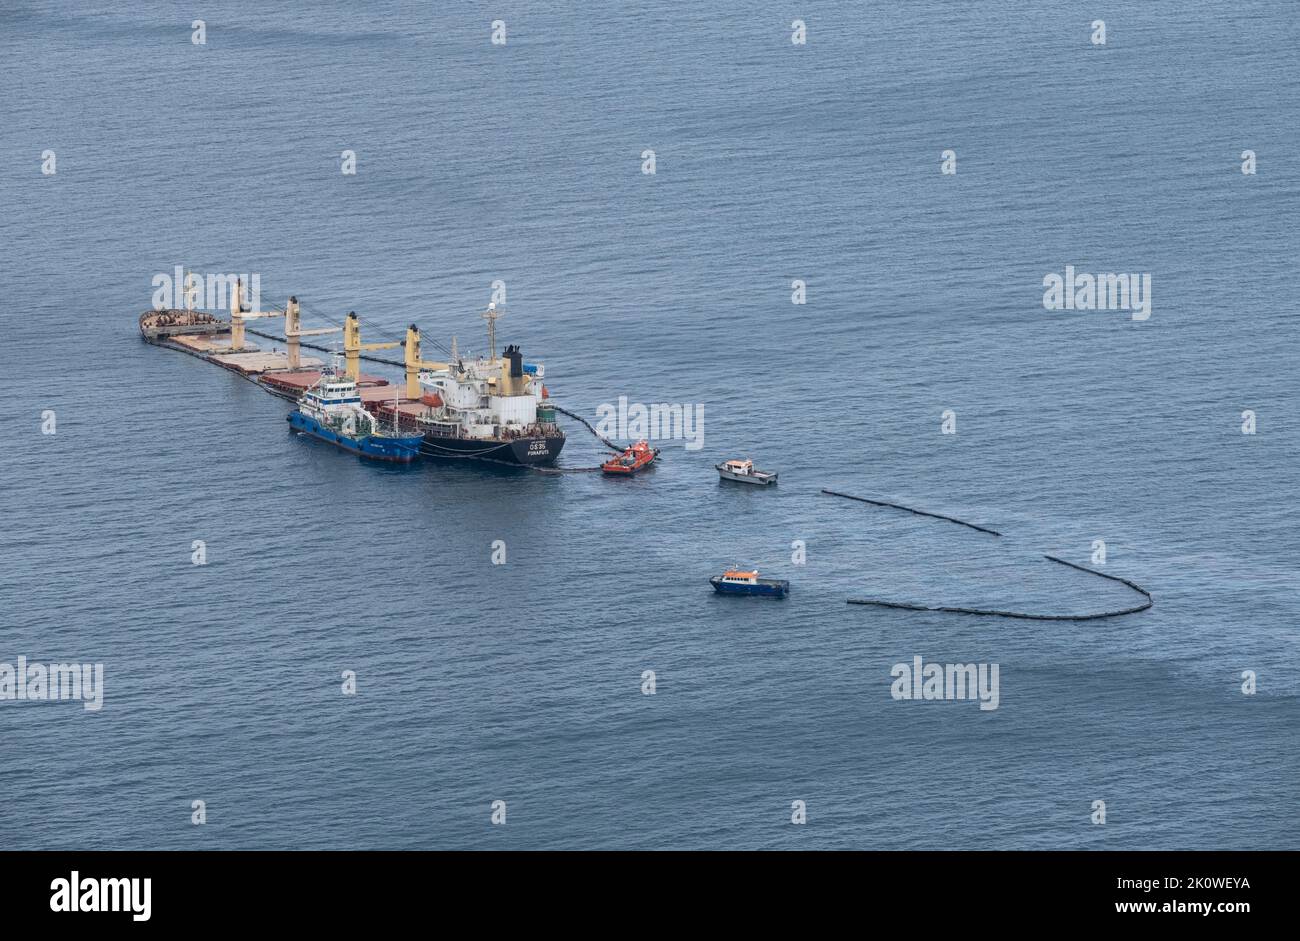 Le transporteur de vrac OS 35 qui est entré en collision avec le méthanier Adam au large de Gibraltar, se trouve enchassé pendant que les équipages nettoient et empêchent la propagation du pétrole. Banque D'Images